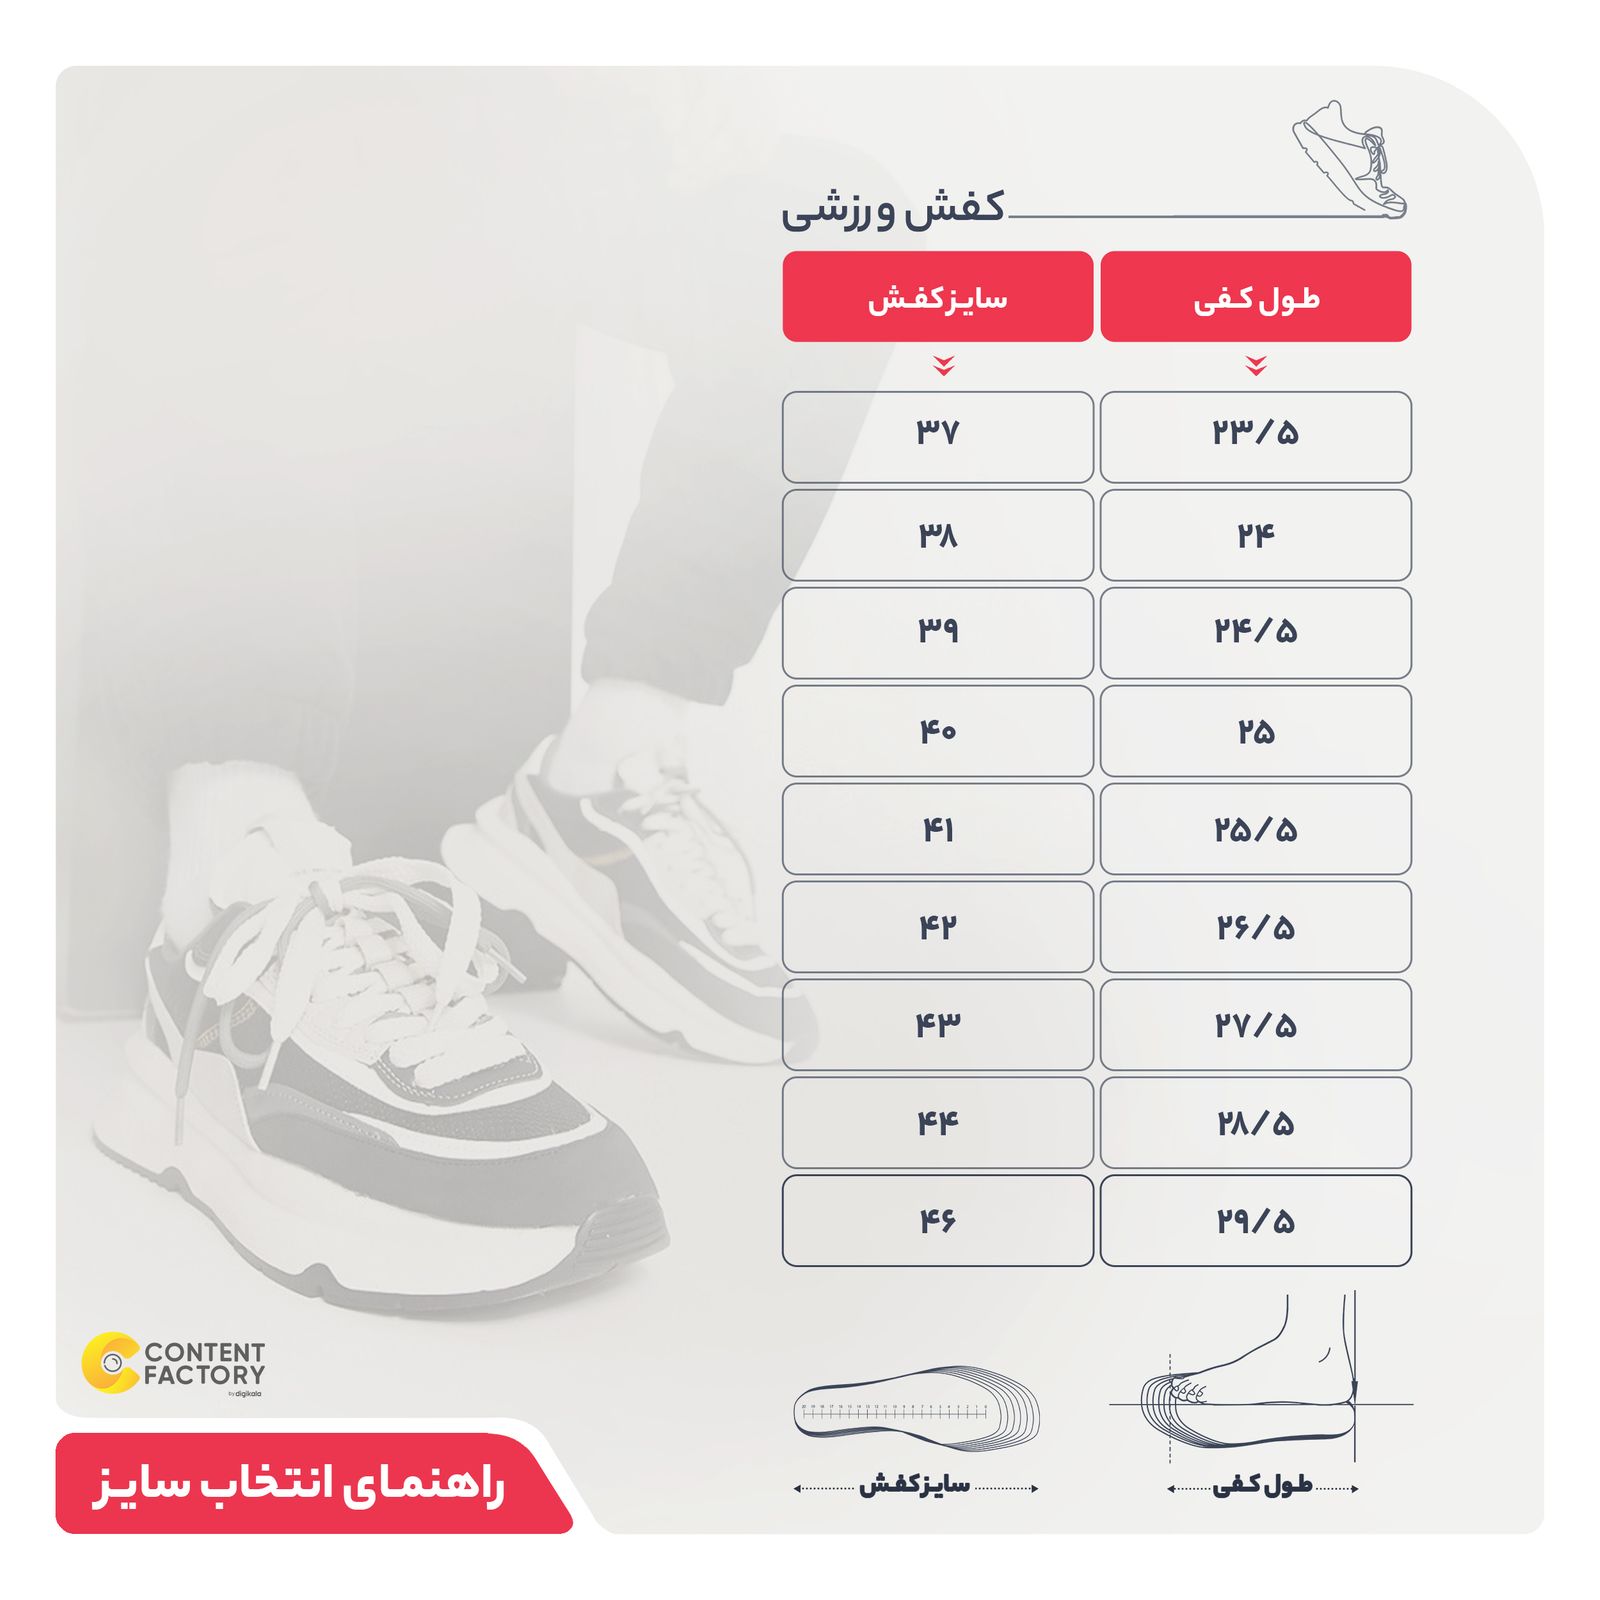 کفش مخصوص پیاده روی مردانه کفش سعیدی مدل 0356200 کد MU110 -  - 9